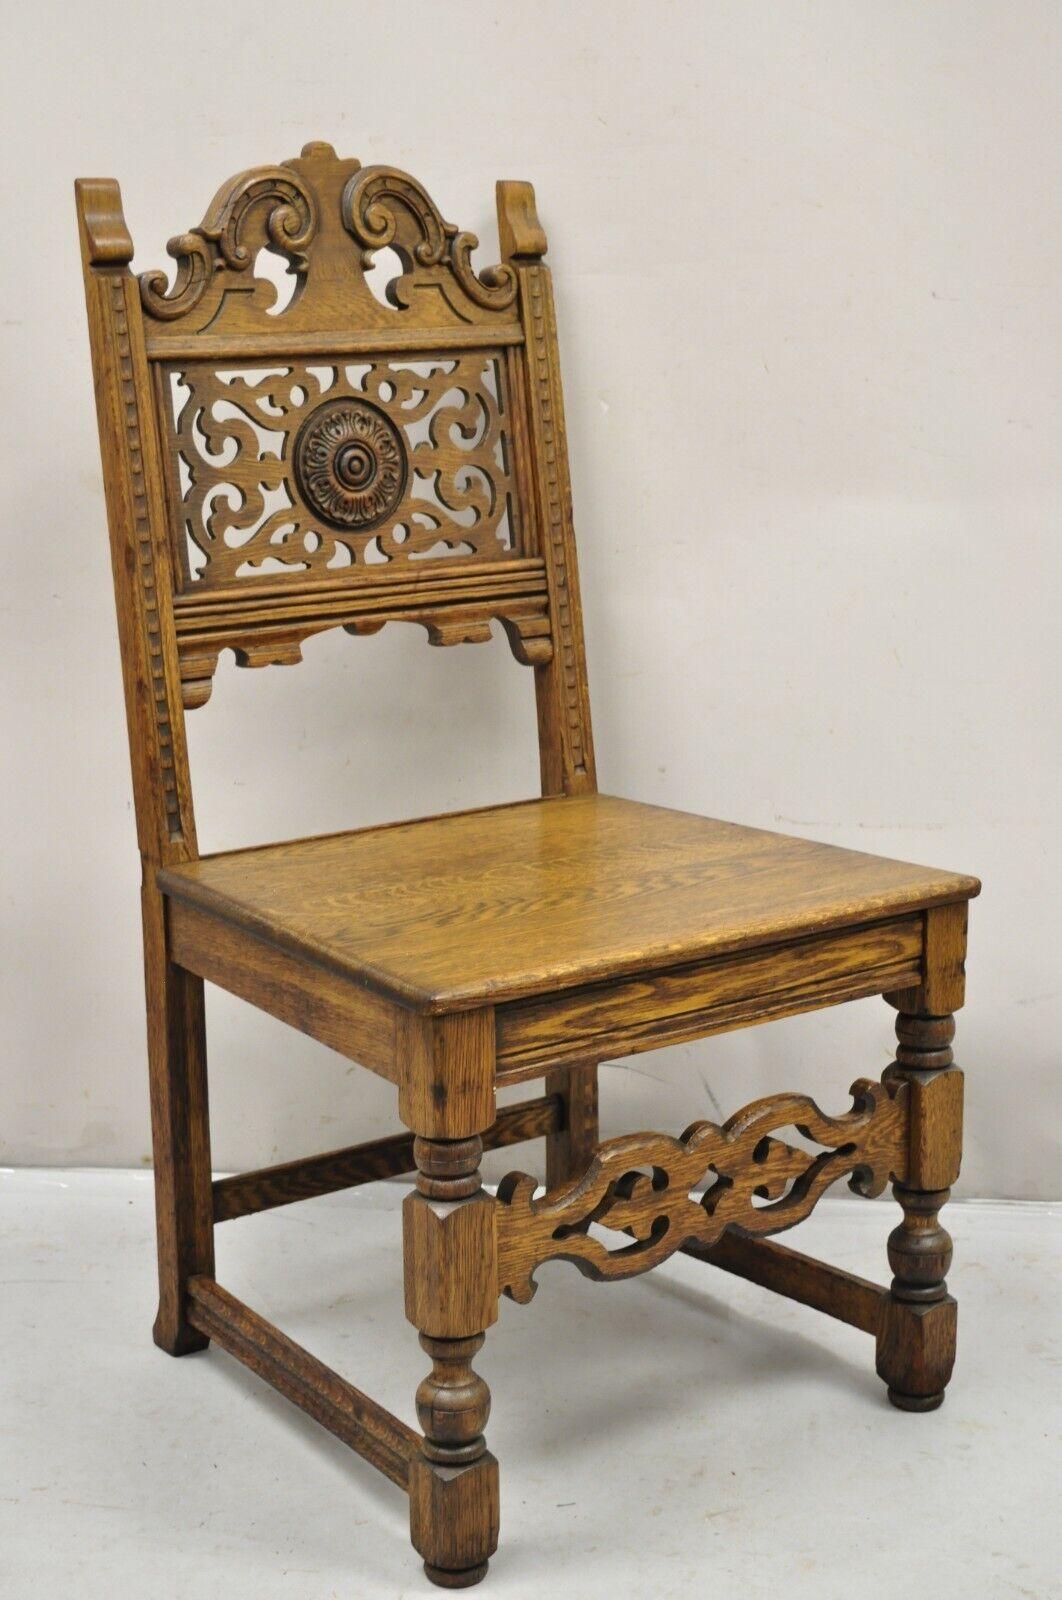 Antique Vanleigh Furniture New York Chêne sculpté Style Renaissance Italienne Trône Dining Side Chair. L'article comporte l'étiquette d'origine, une construction en bois de chêne massif, un beau grain de bois, un très bel article ancien. Circa Early